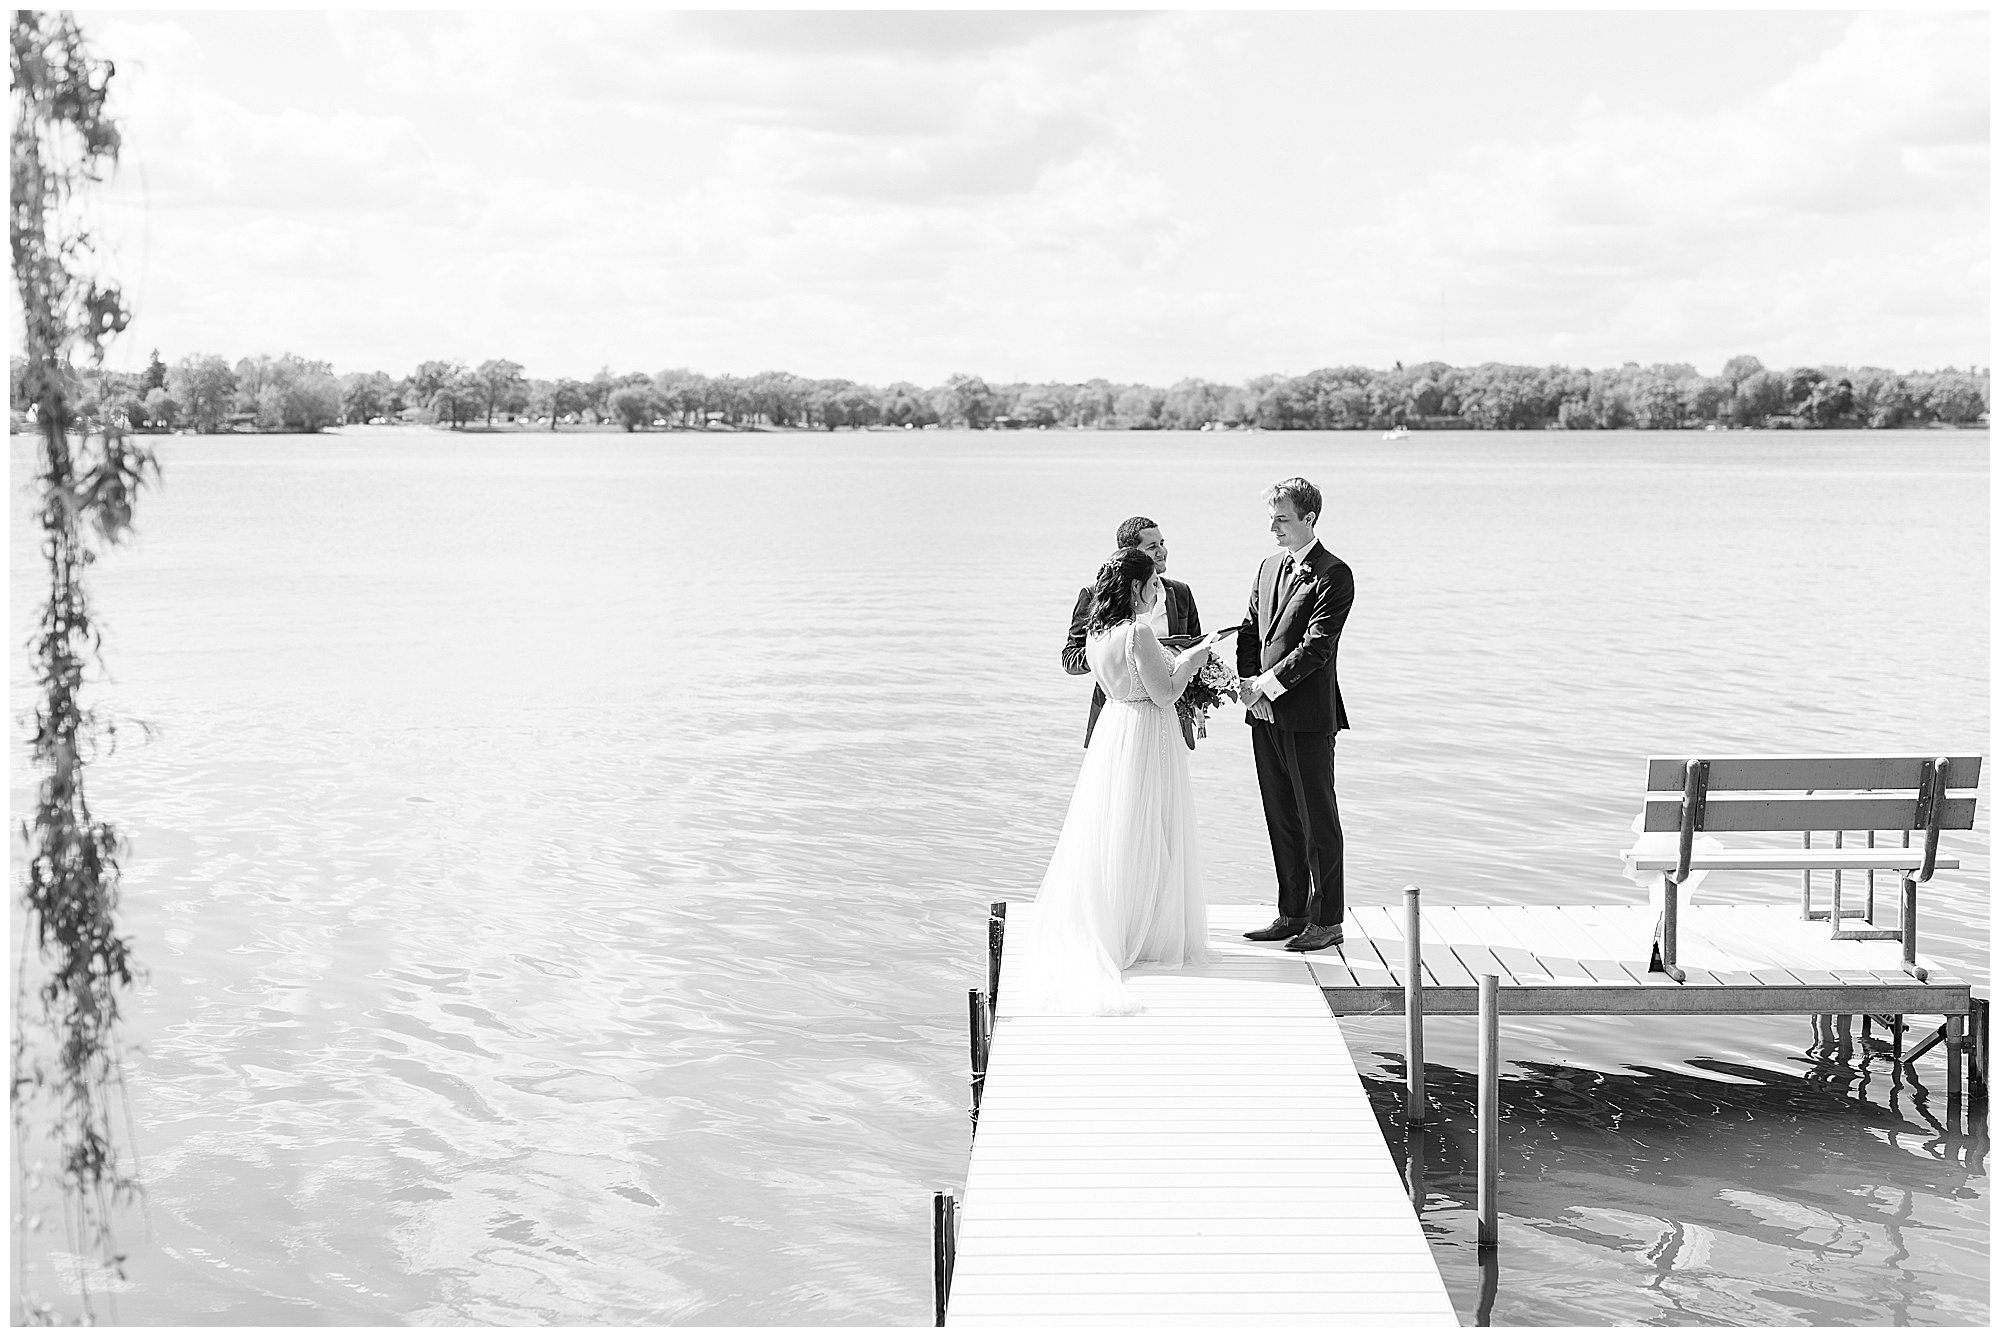 Wedding ceremony in Illinois